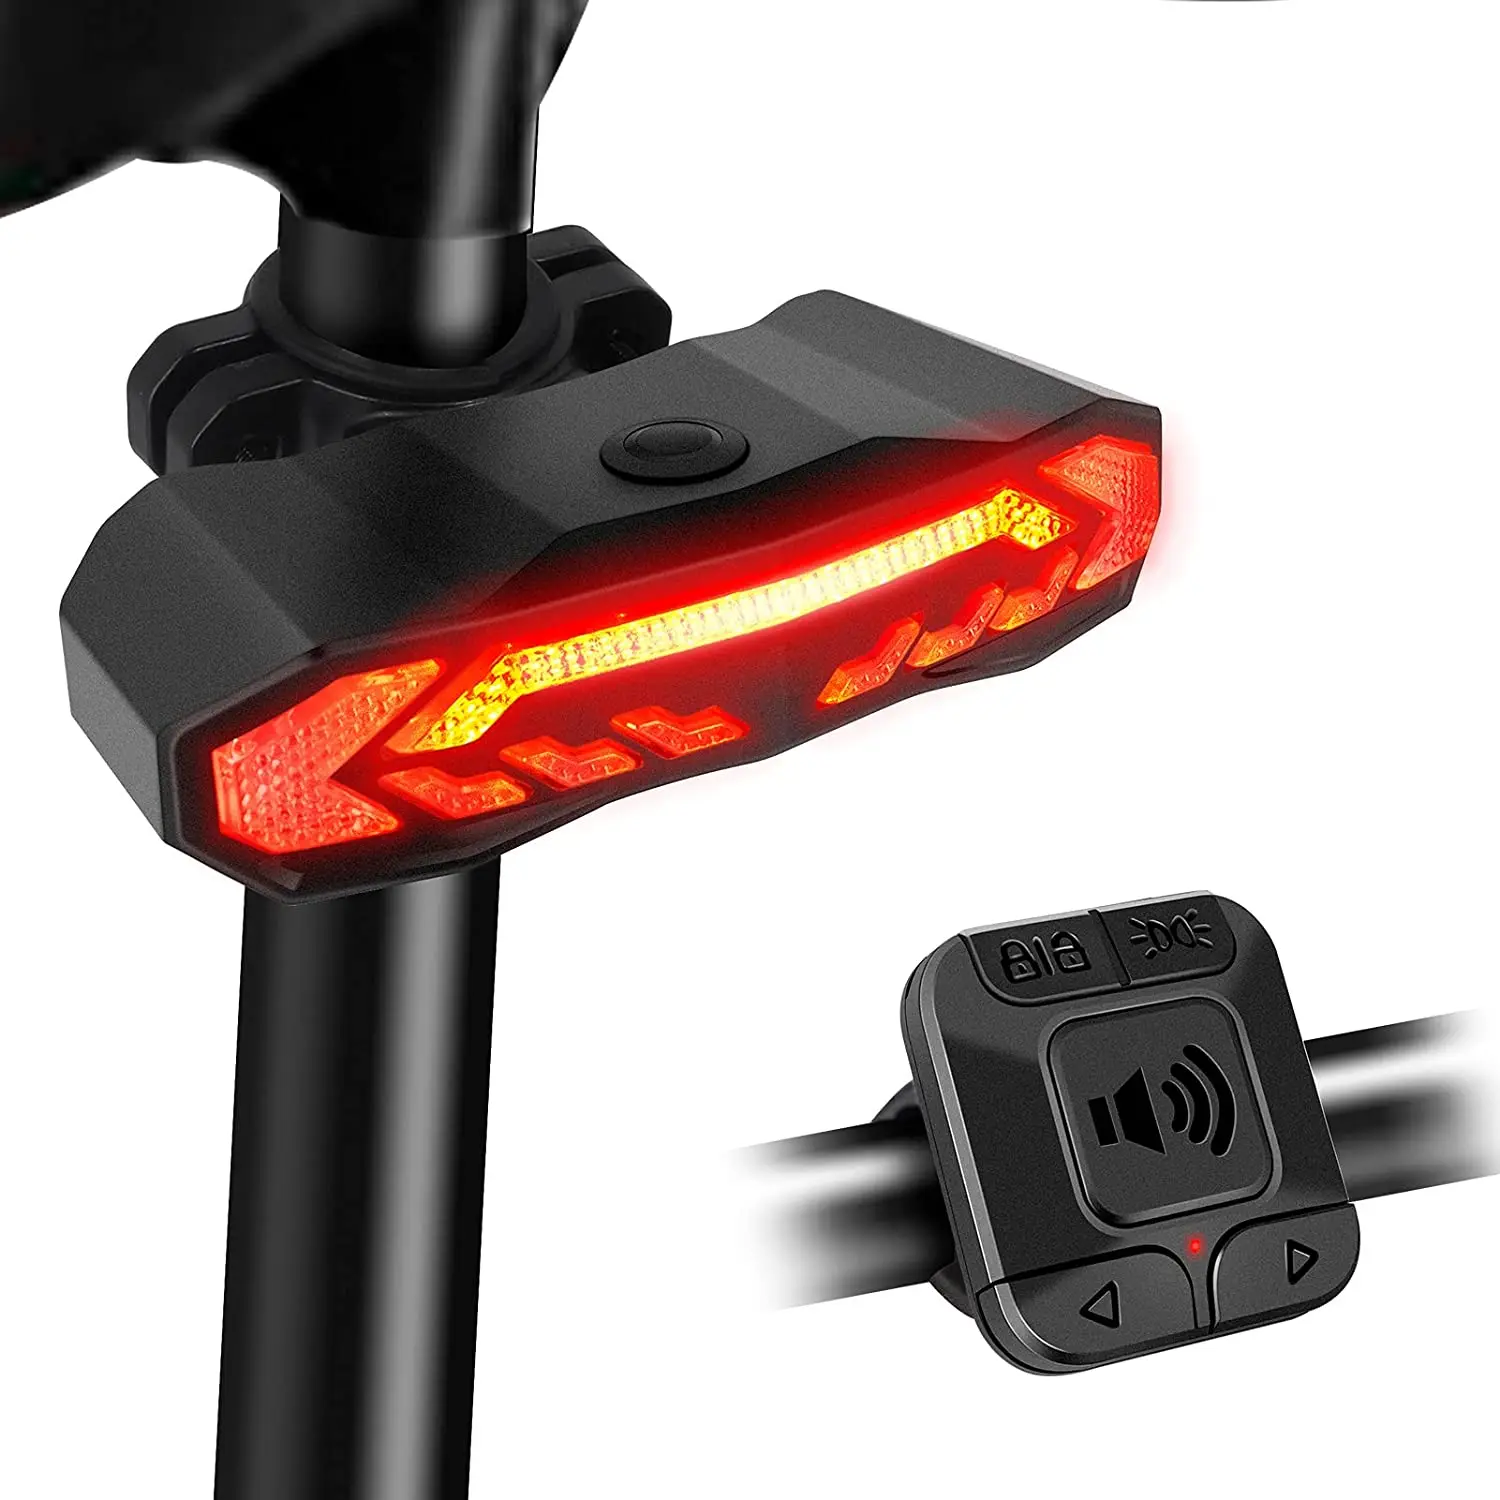 USB Rechargeable Bike Lights Rear Front Hazard Waterproof LED Front & Rear Light 